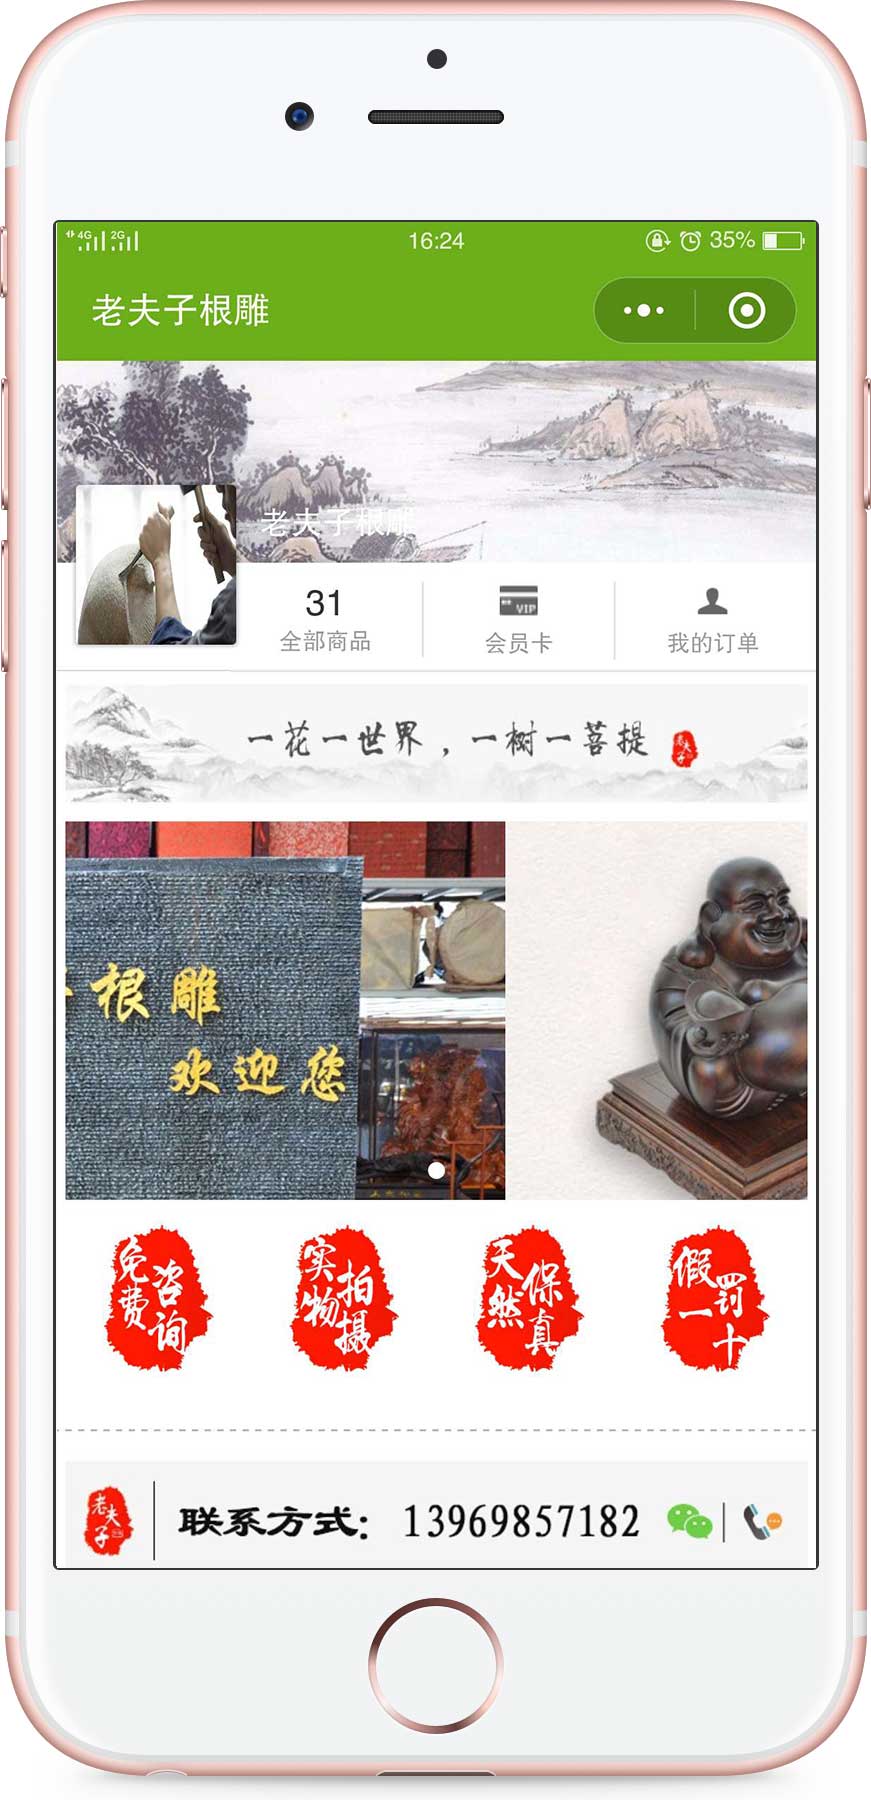 上海老夫子根雕木雕红木家居批发零售最便宜